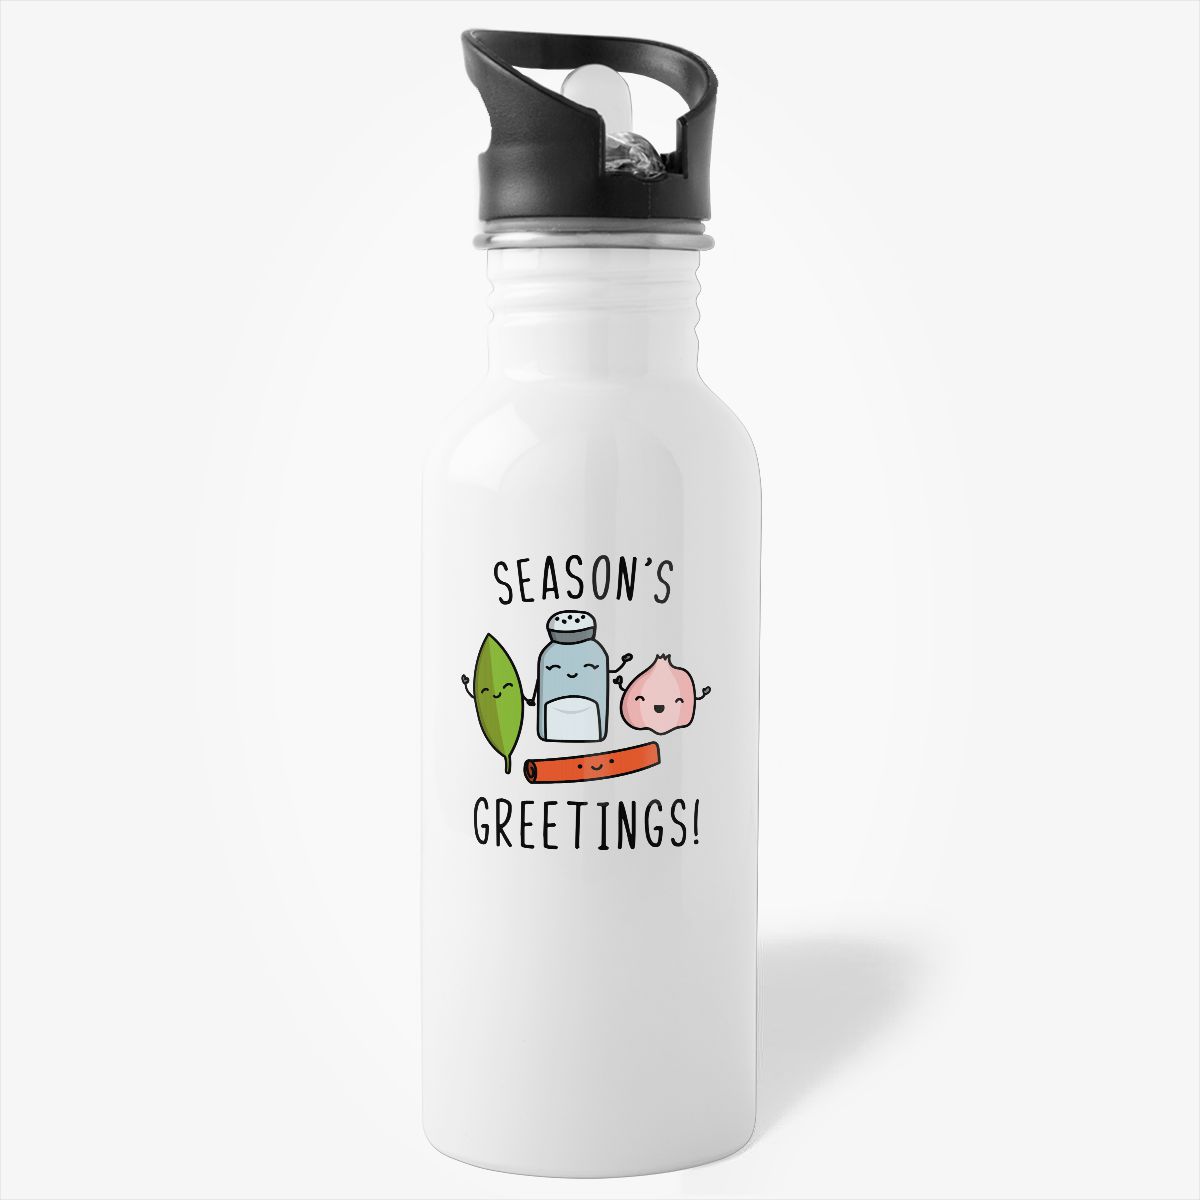 Seasonings Greetings - Christmas Holiday Gift Water Bottle